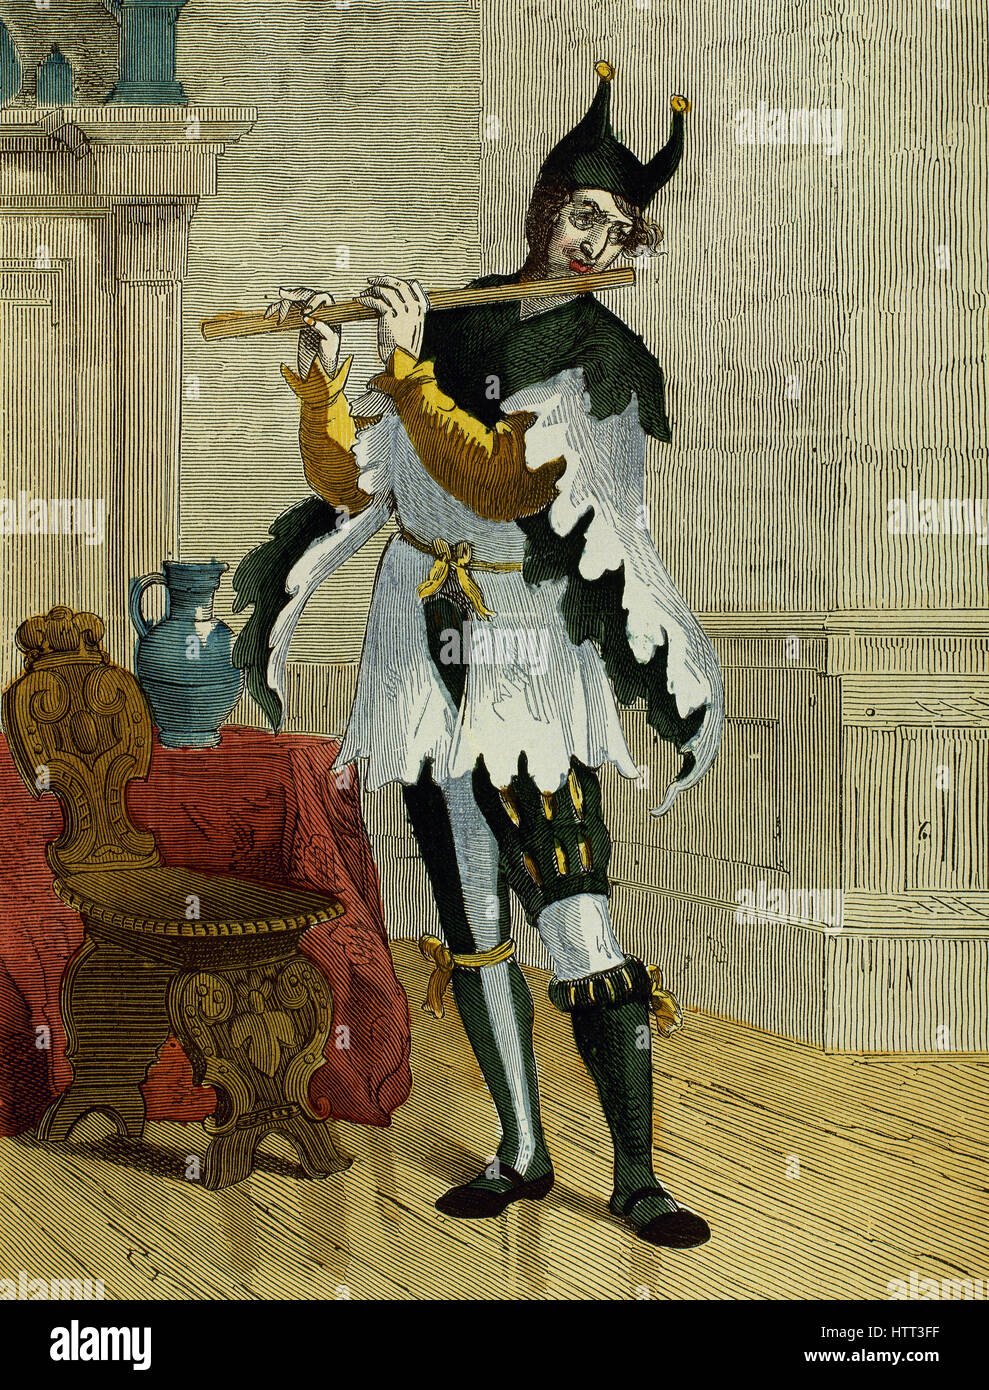 Jester jouer de la flûte. 16e siècle. La gravure. De couleur. Banque D'Images